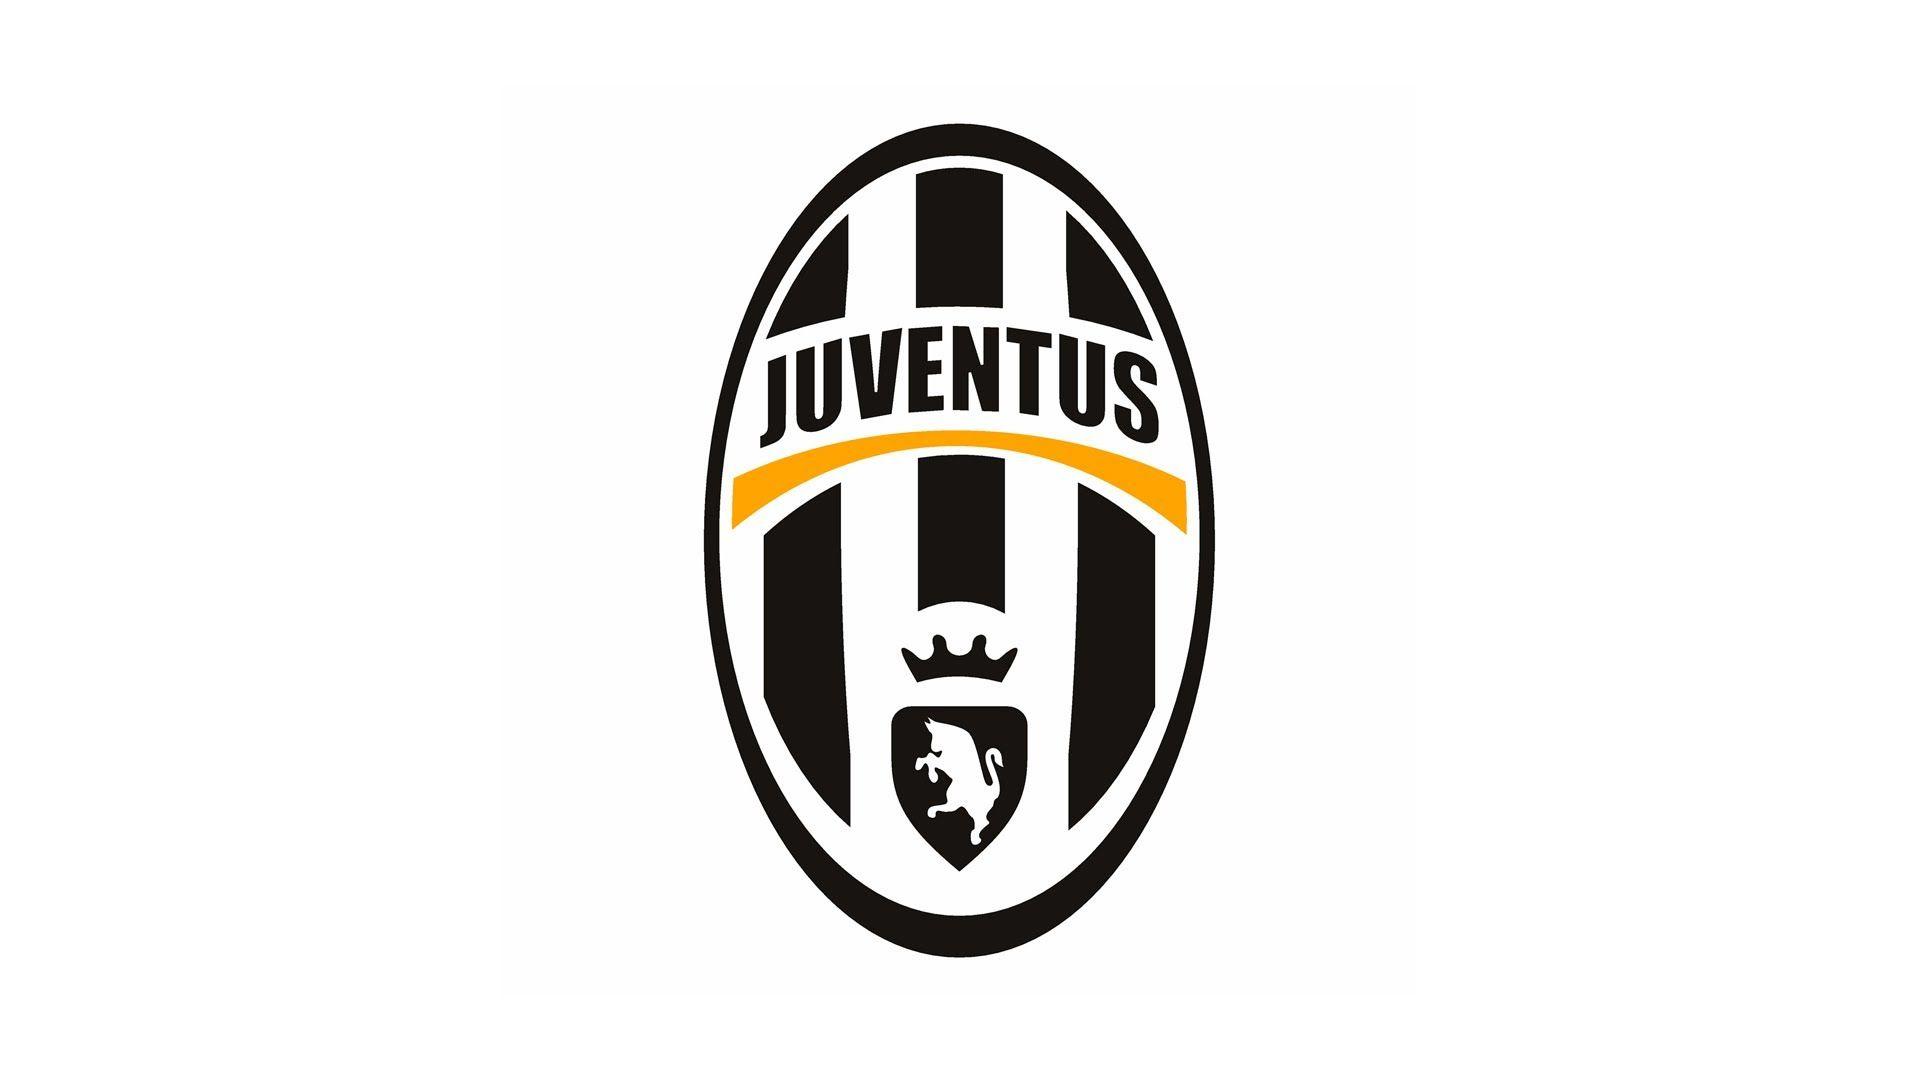 Juventus Logo - Juventus punished after fans make anti-Semitic chants